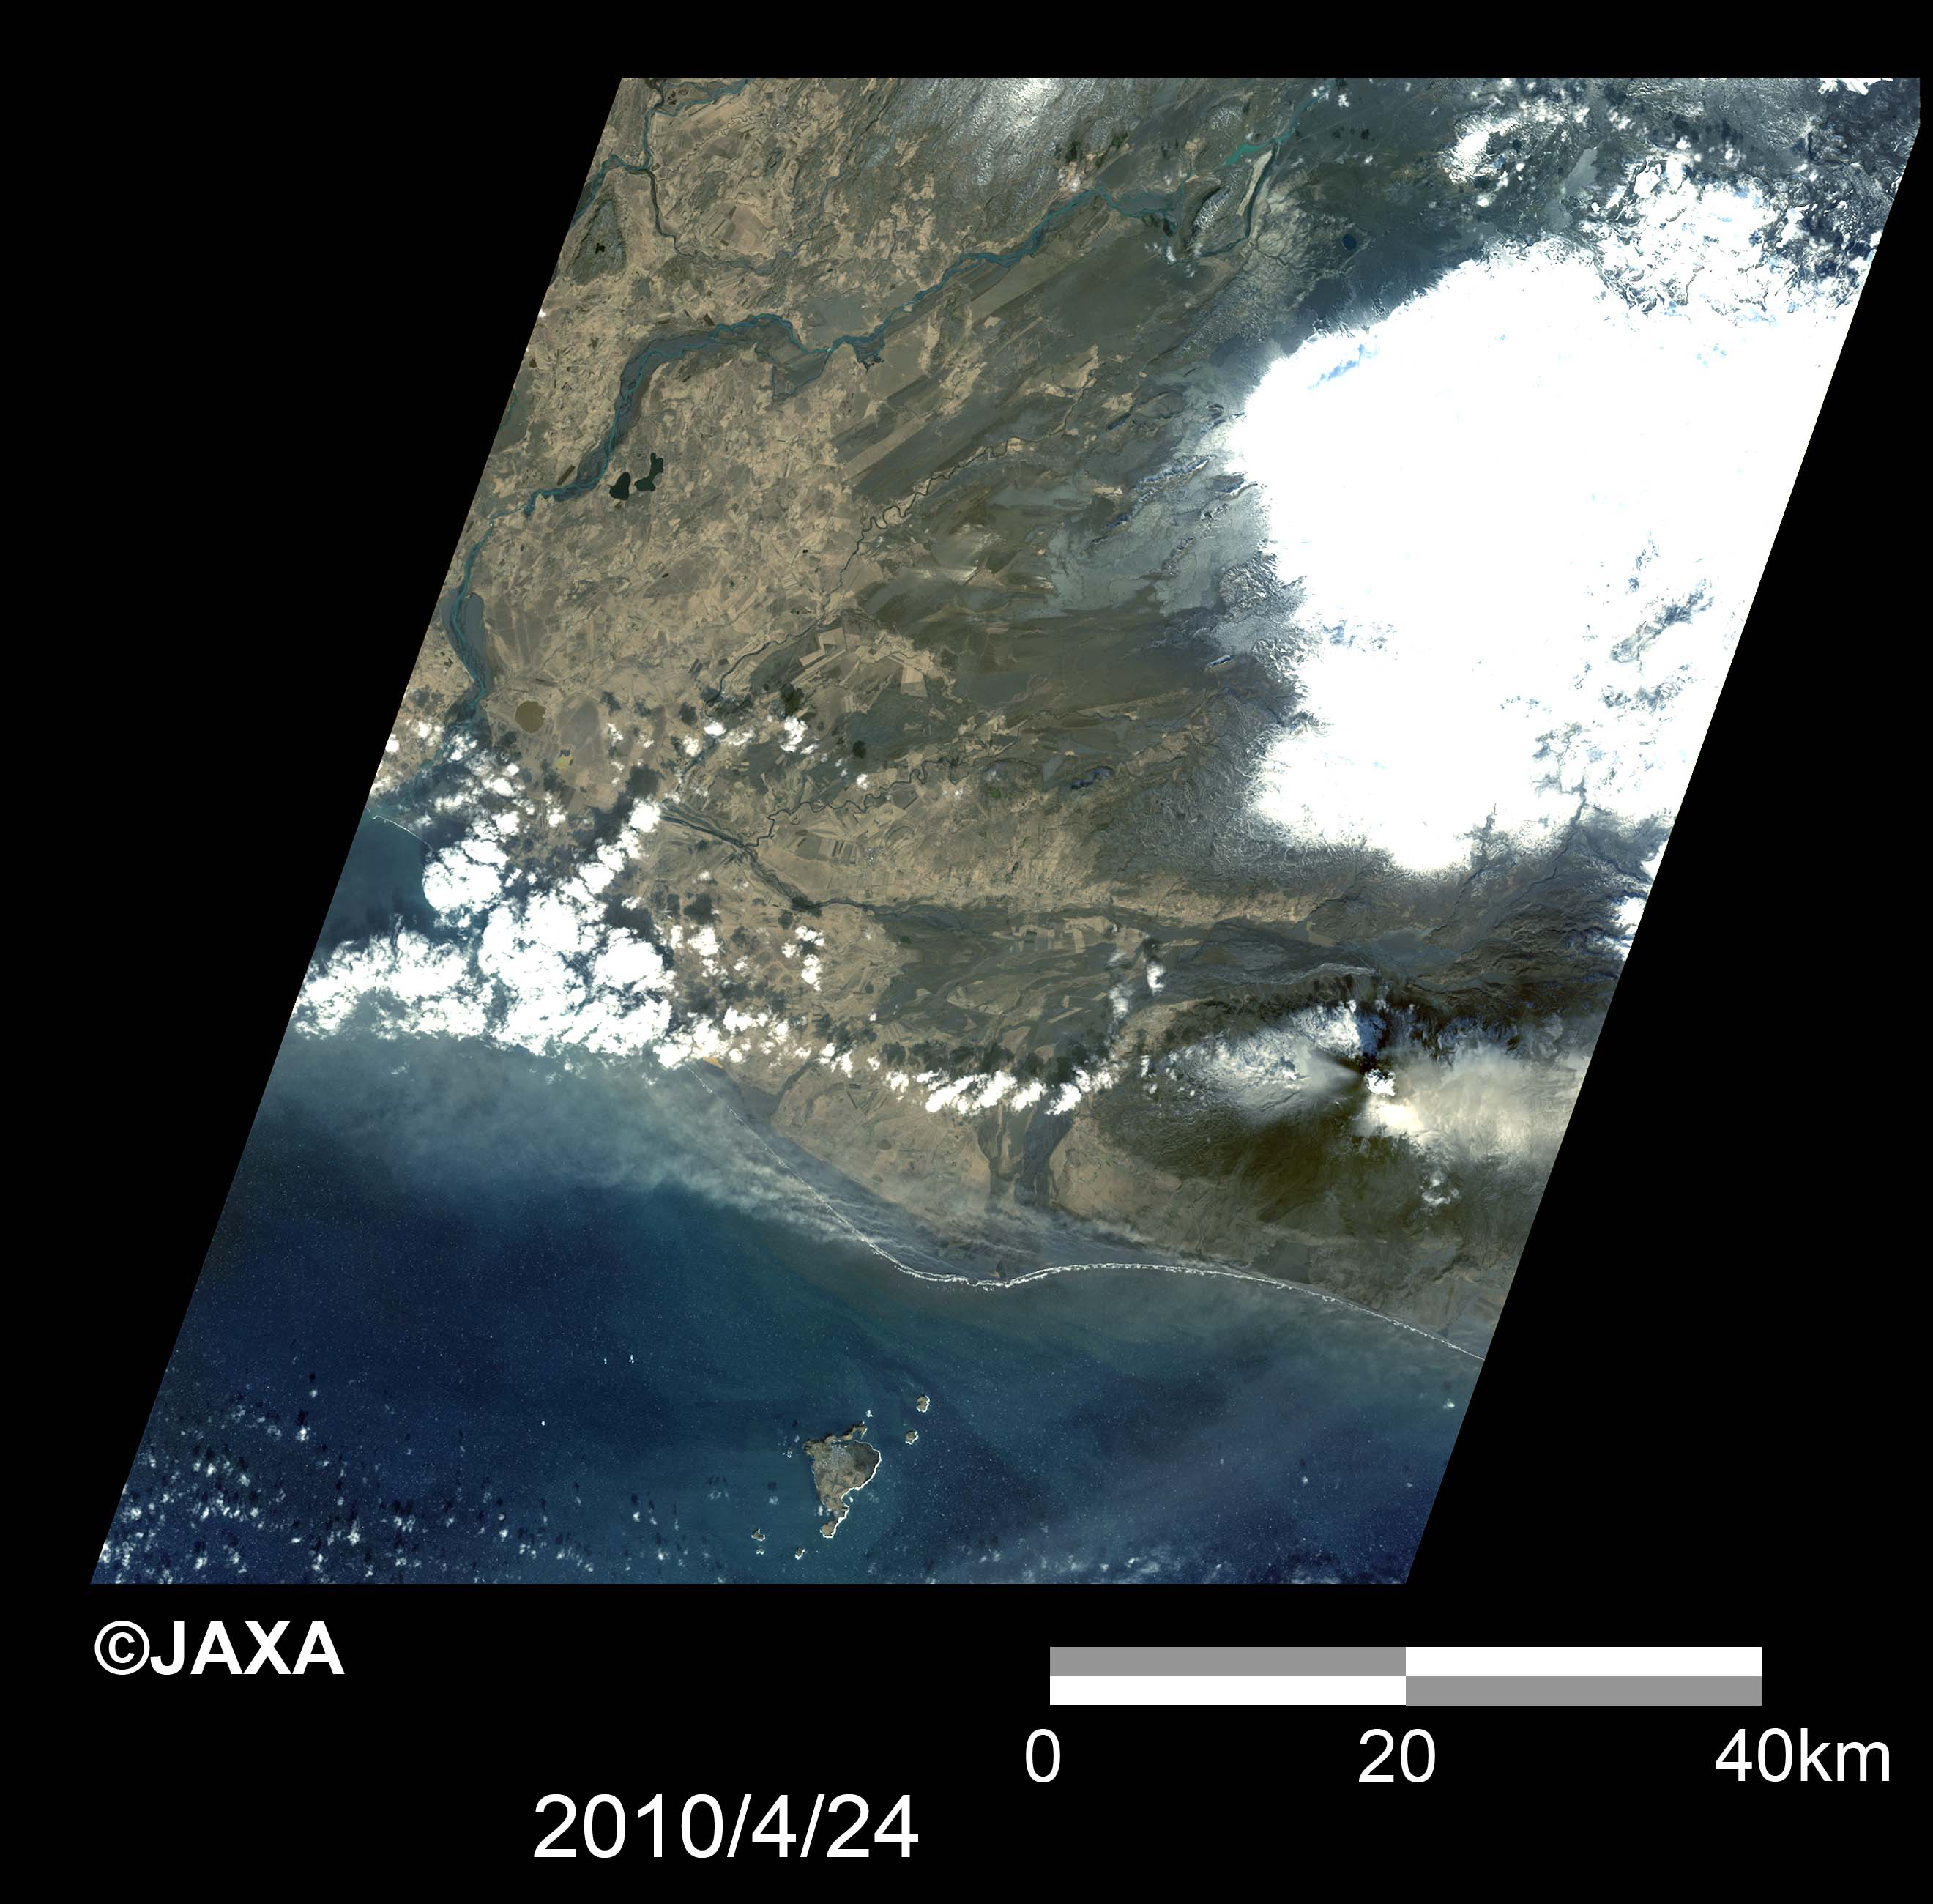 図1: エイヤフィヤトラヨークトル氷河の全体画像の比較 2010年4月24日観測